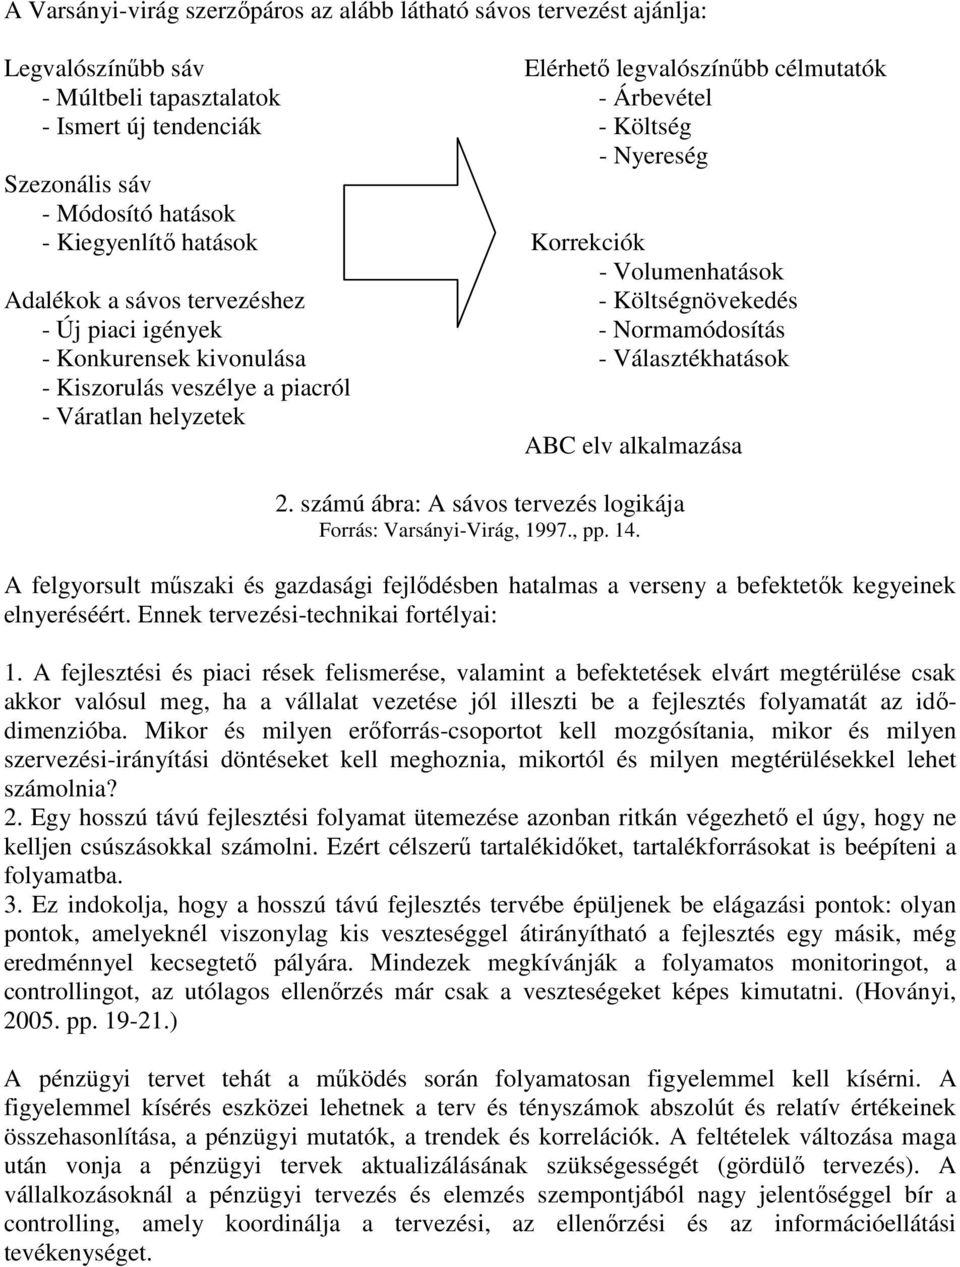 kivonulása - Választékhatások - Kiszorulás veszélye a piacról - Váratlan helyzetek ABC elv alkalmazása 2. számú ábra: A sávos tervezés logikája Forrás: Varsányi-Virág, 1997., pp. 14.